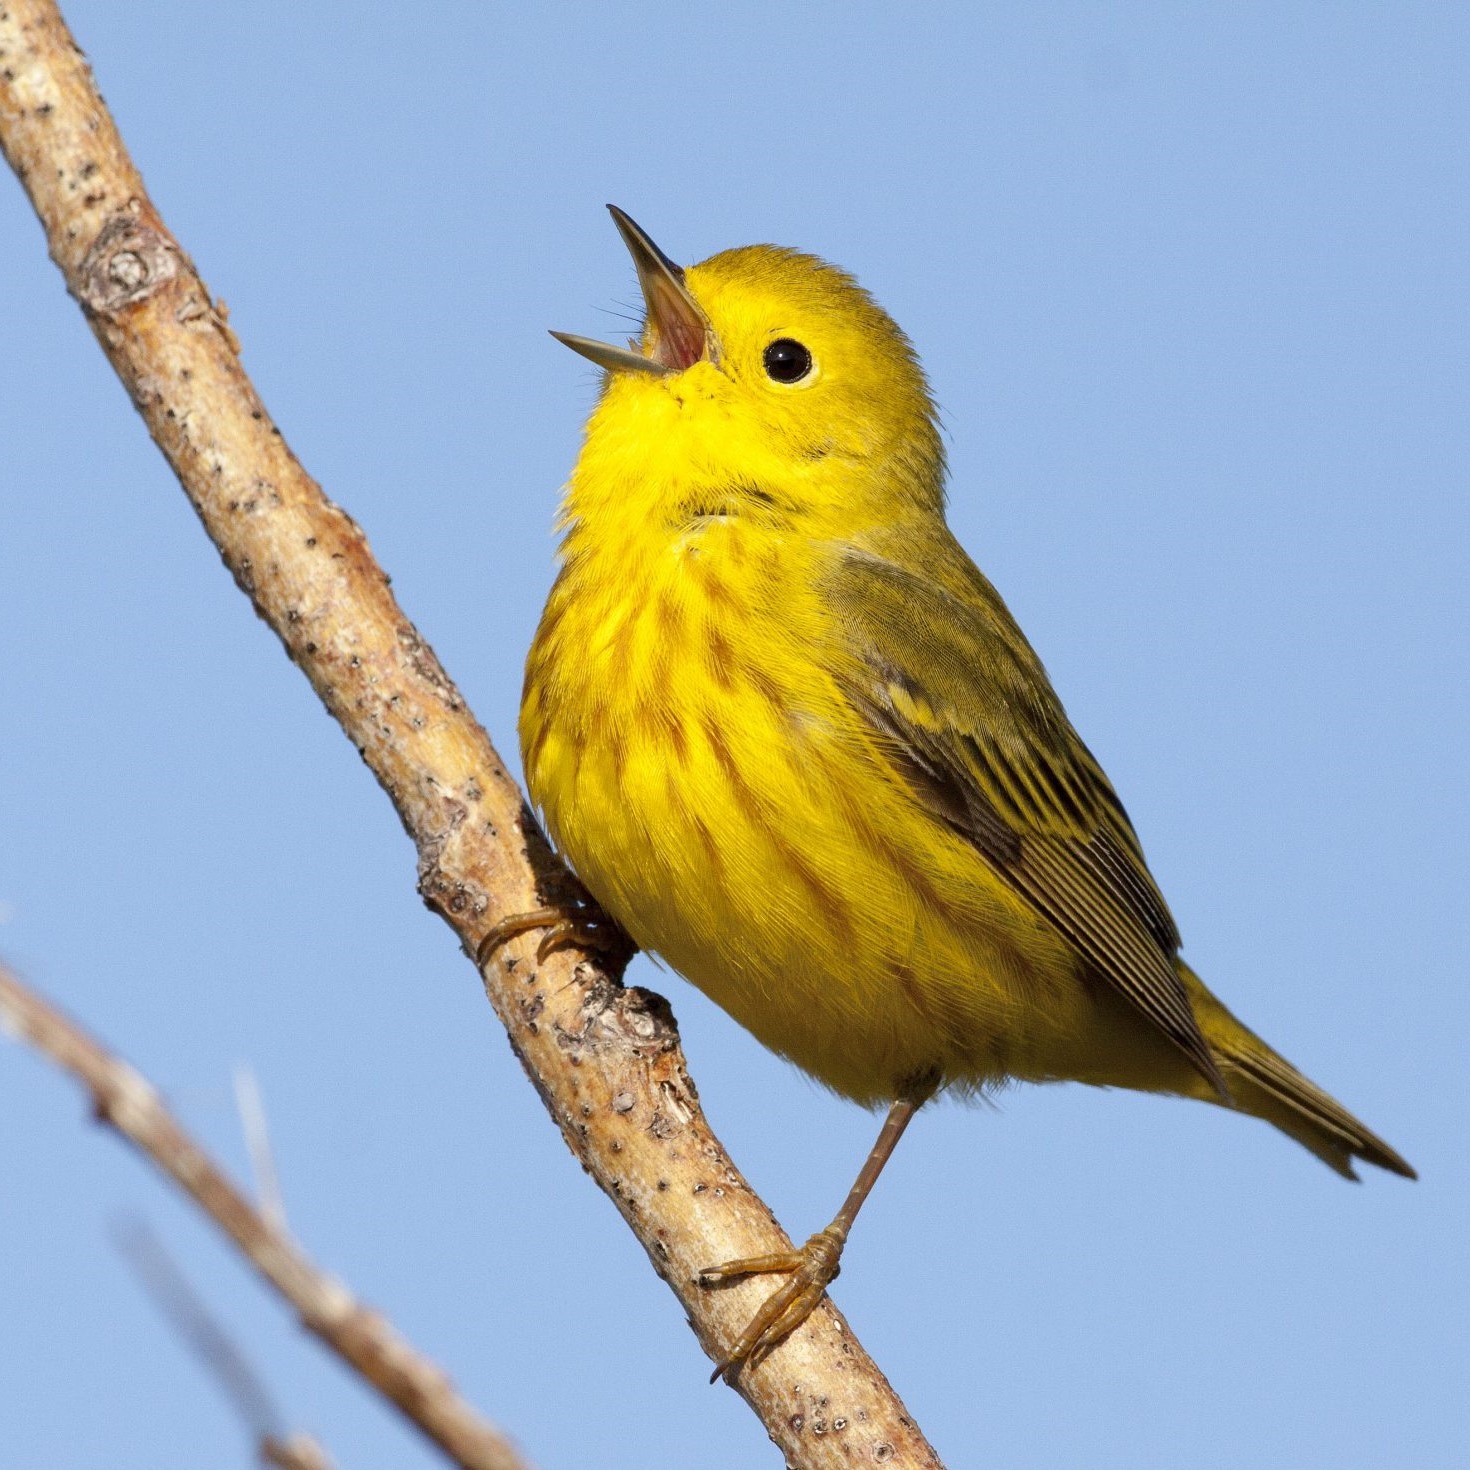 一只小黄鸟挺起胸膛，张开白色的喙在唱歌